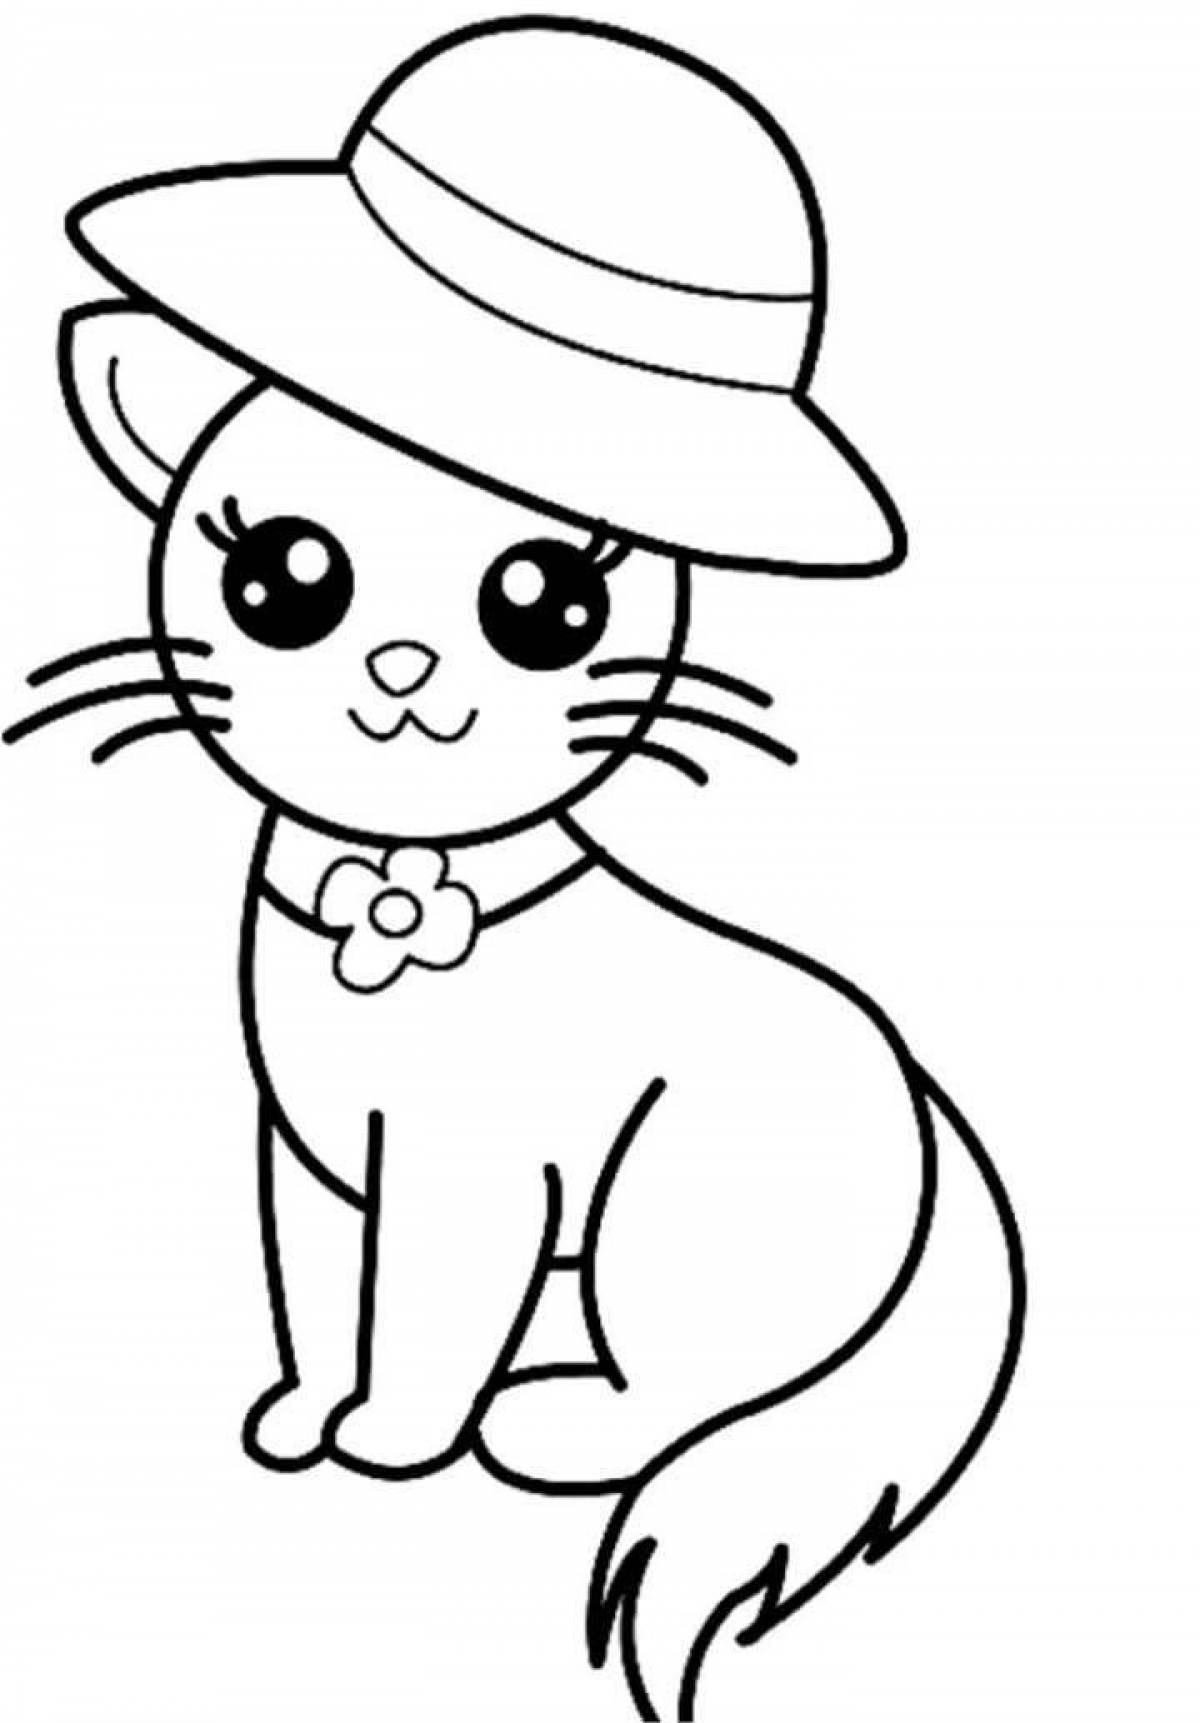 Сказочная страница раскраски кошек для детей